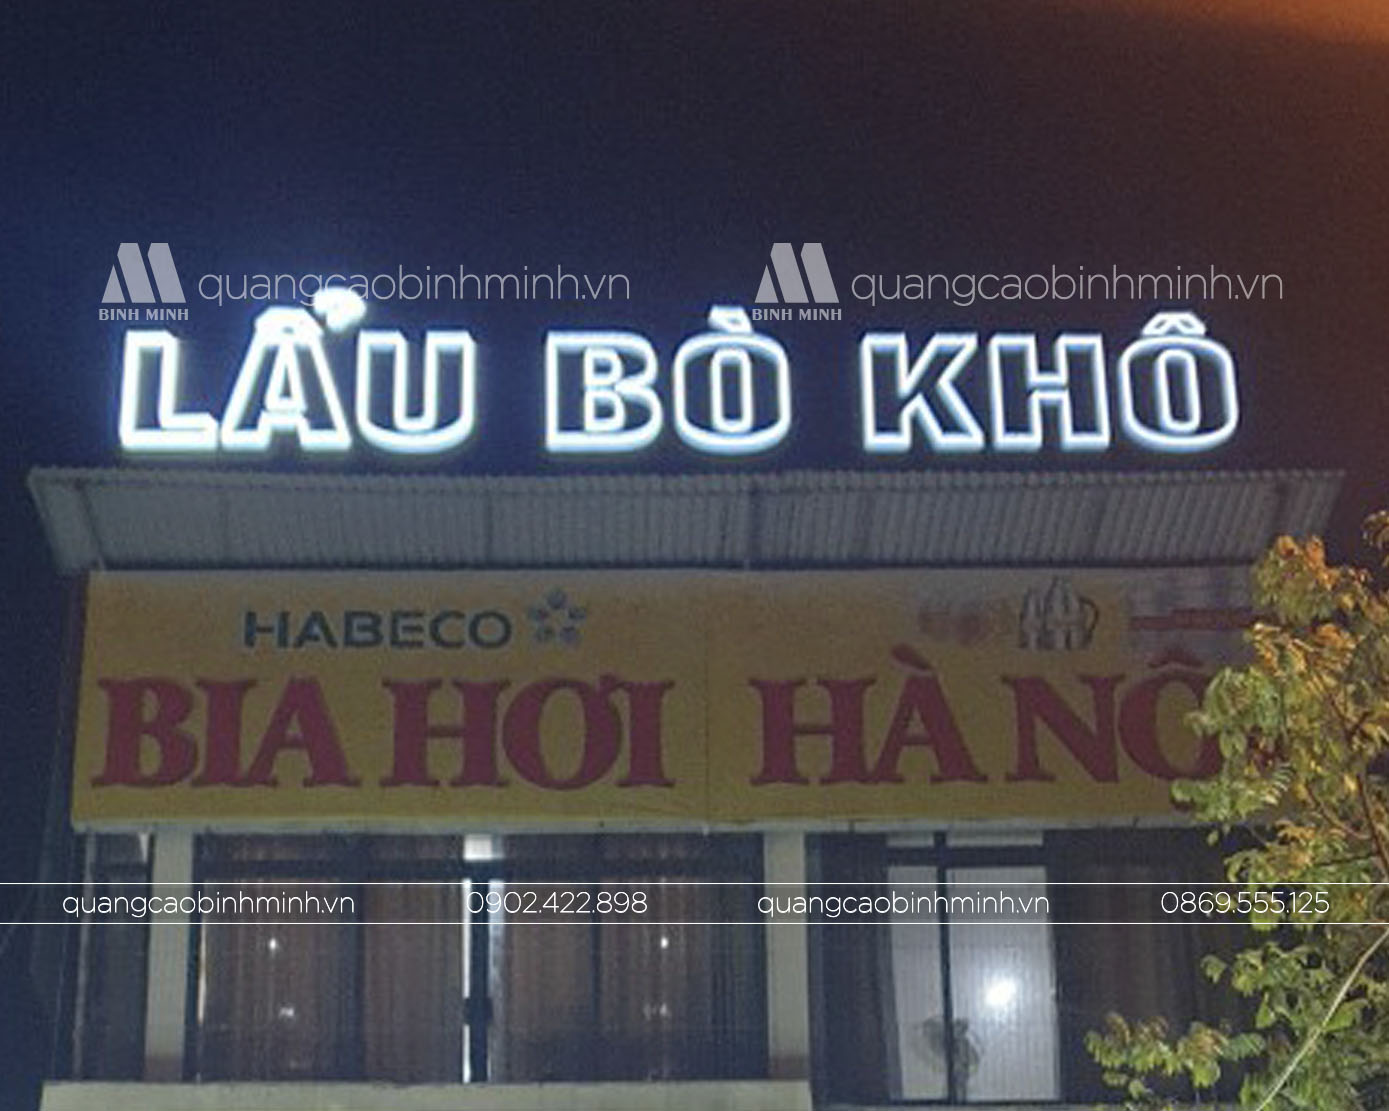 Biển quảng cáo nhà hàng Lẩu Bò Khô